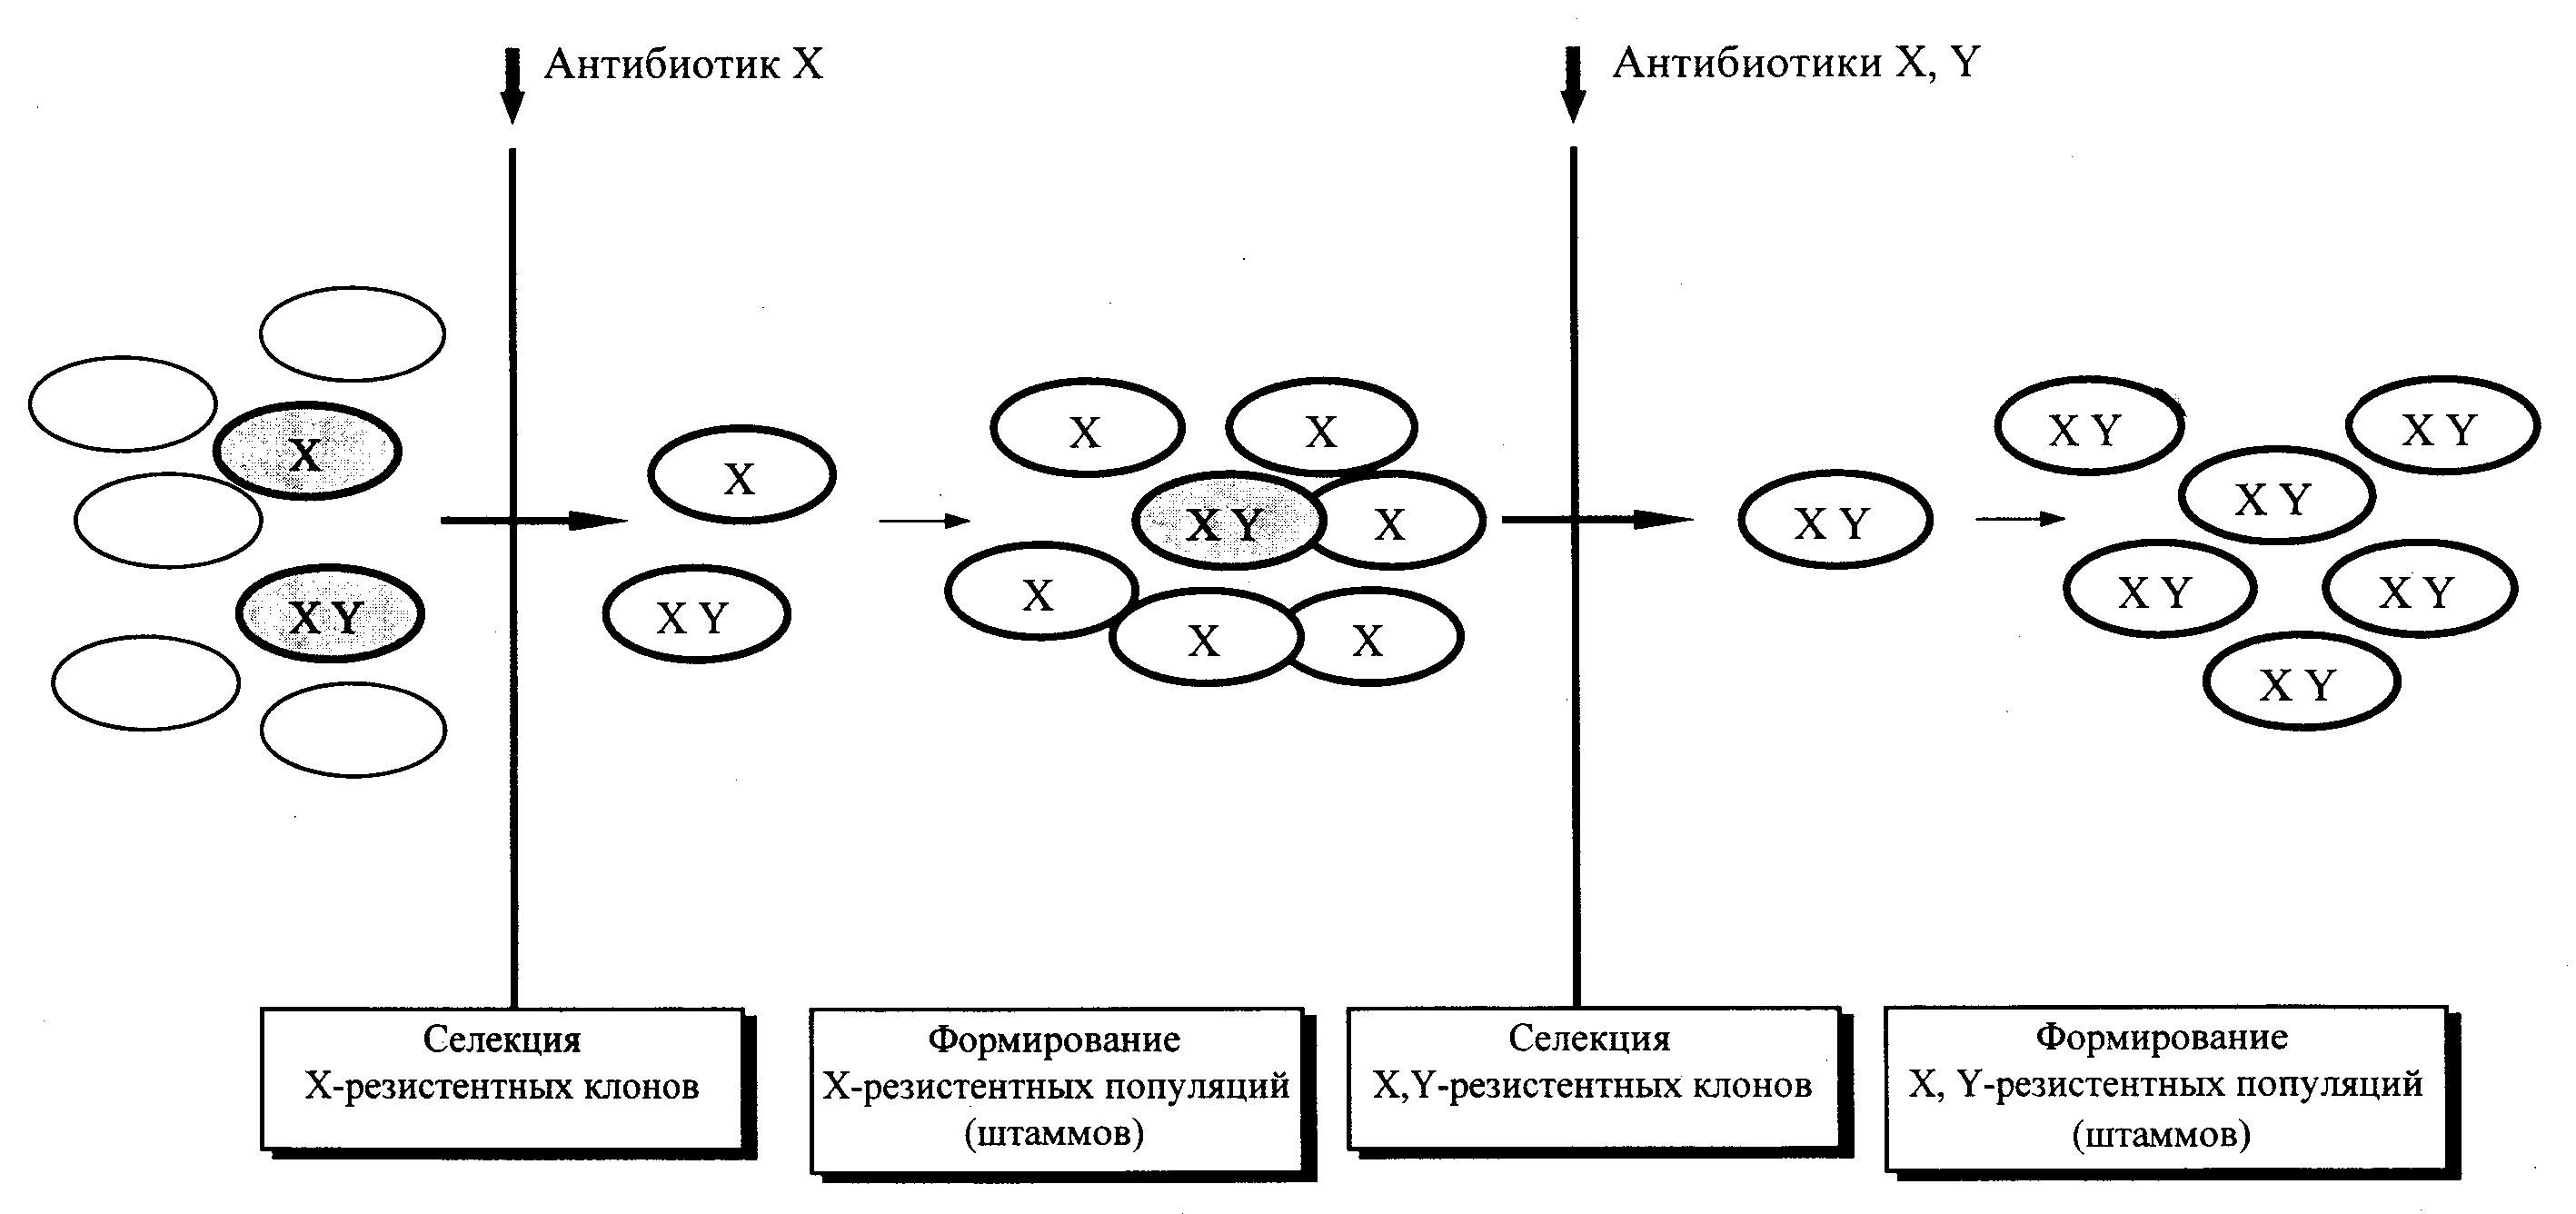 Рис. 11. Принцип эволюции антибиотикоустойчивых бактерий. X, Y — бактерии, несущие r-гены (транспозо- ны, плазмиды), которые детерминируют резистентность к соответствующим антибиотикам